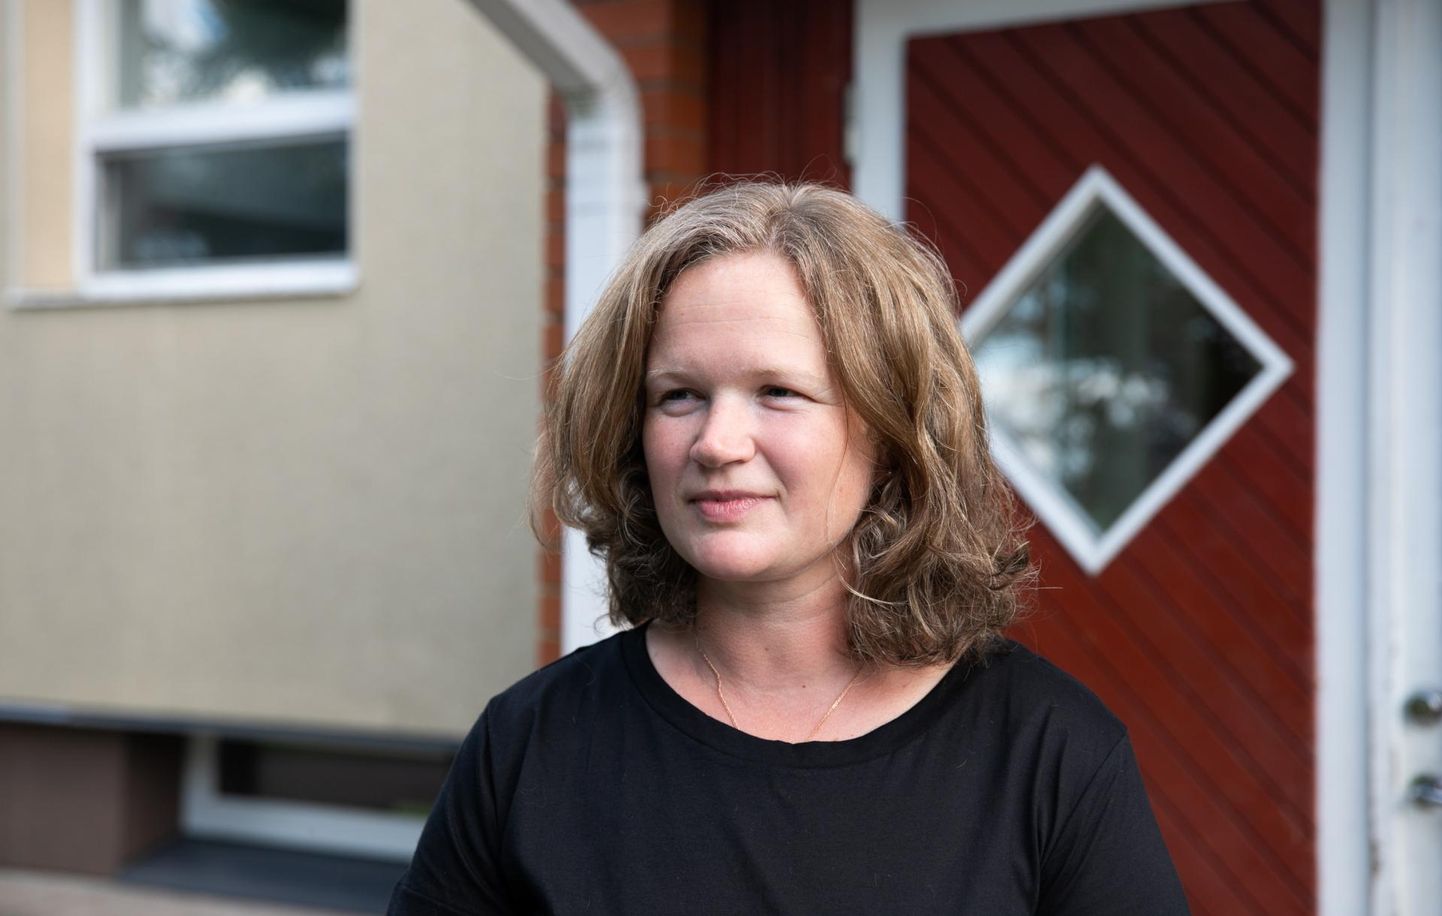 Kahe kooli juht Marja-Liisa Männik astub suurele väljakutsele julgesti vastu.